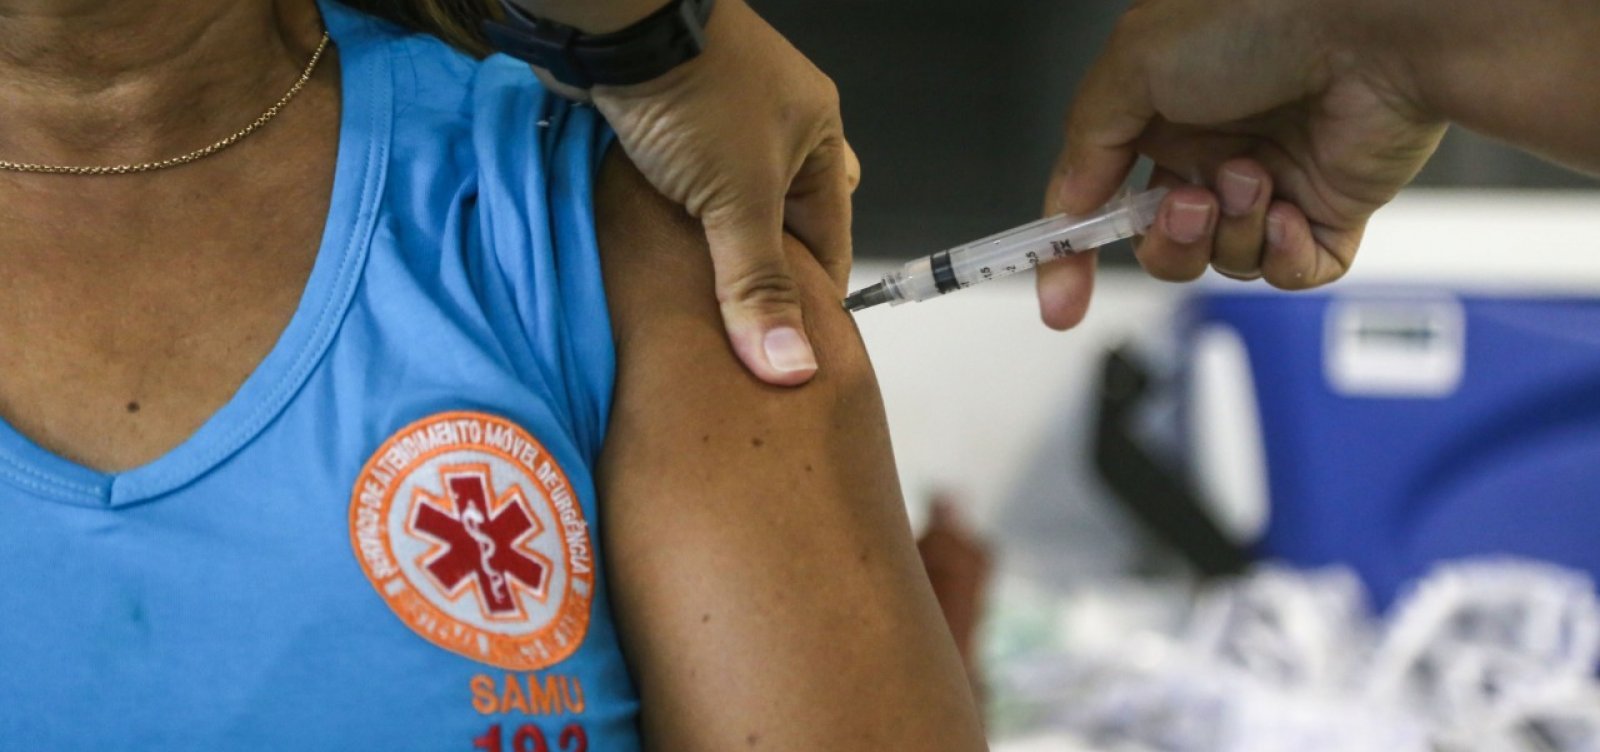 Mais de meio milhão de brasileiros foram vacinados em 13 estados, diz levantamento